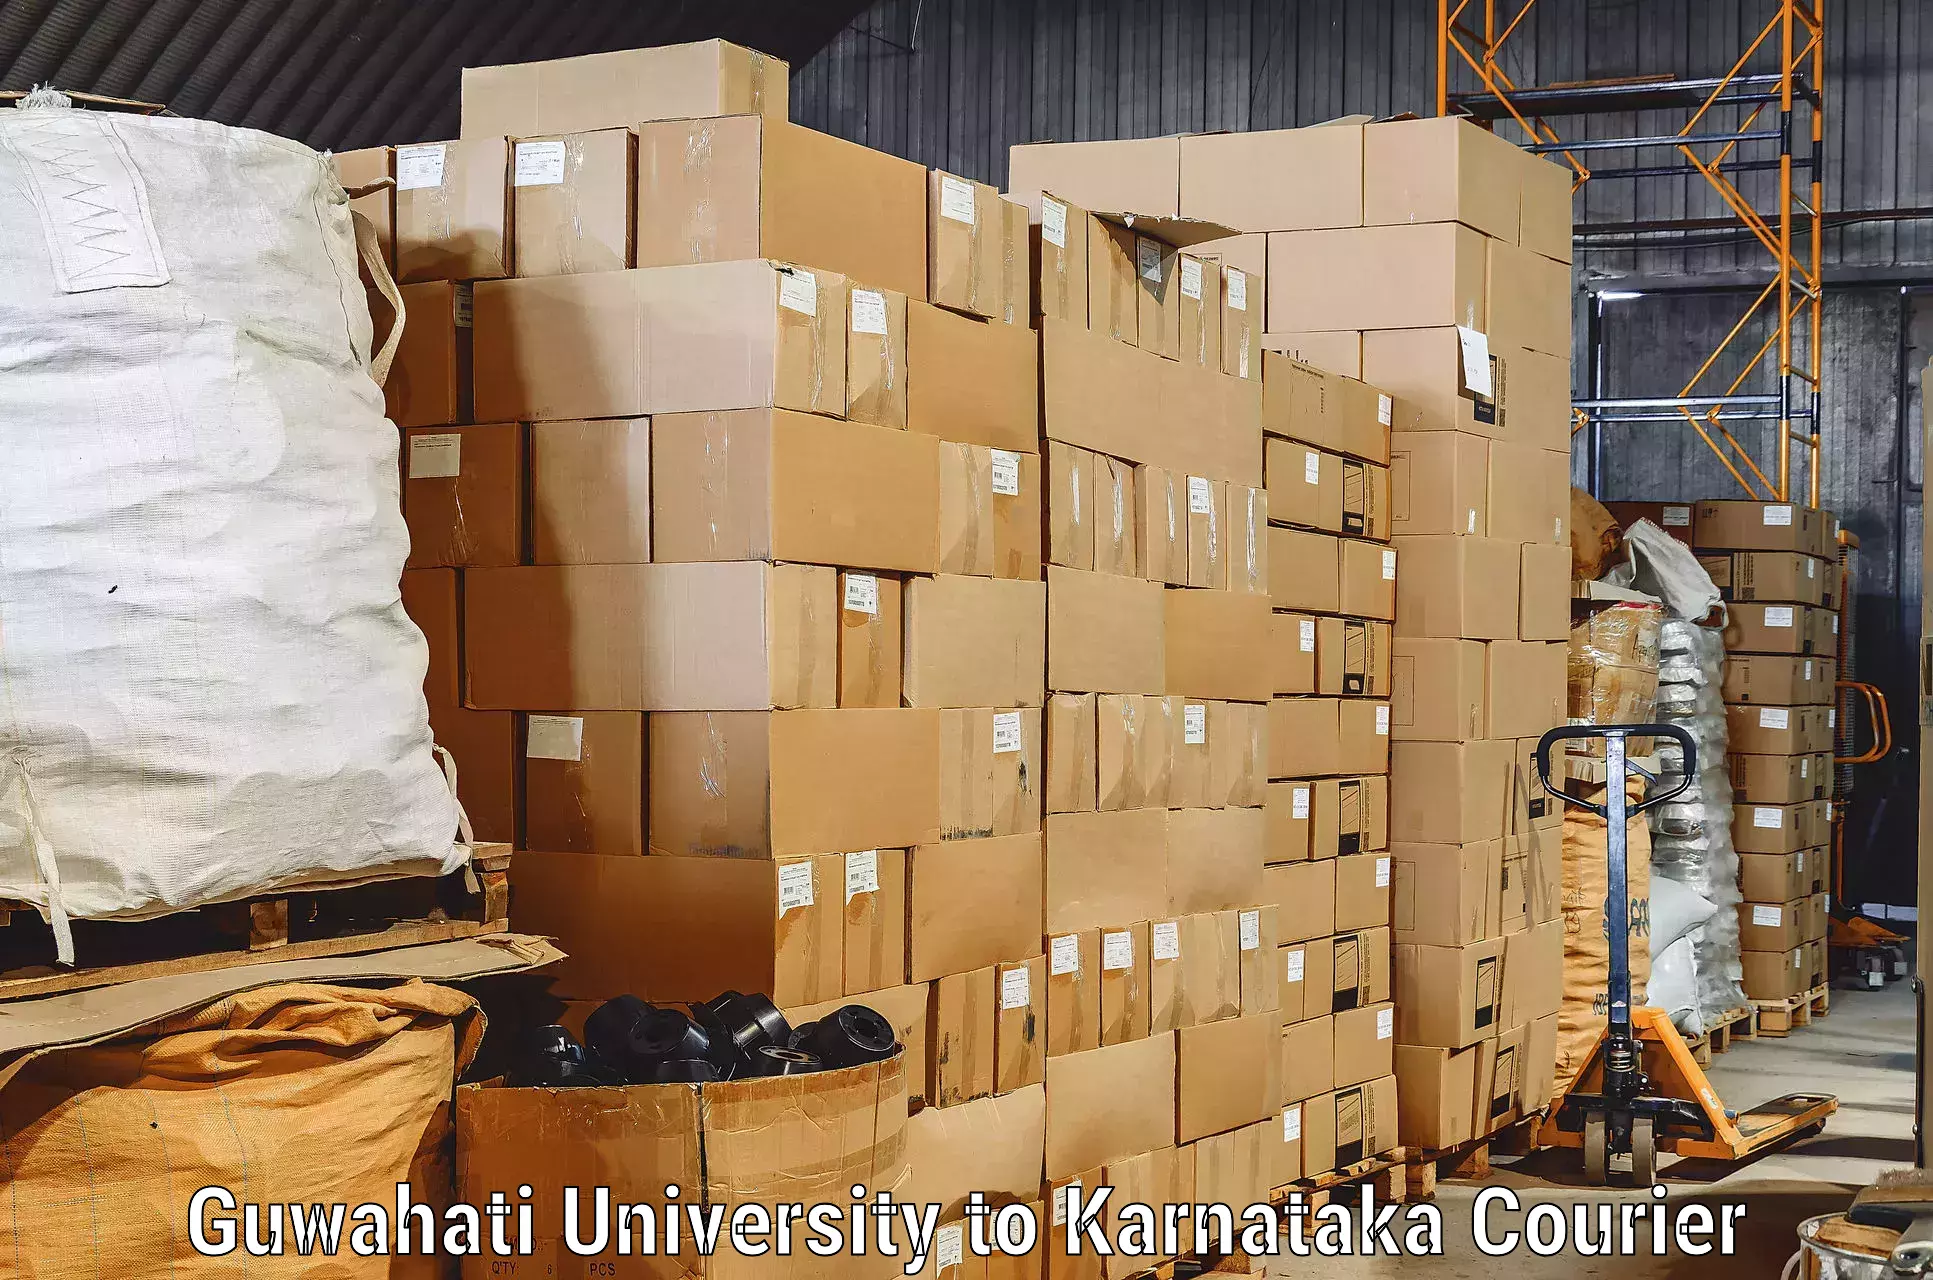 Furniture transport service in Guwahati University to Gulbarga